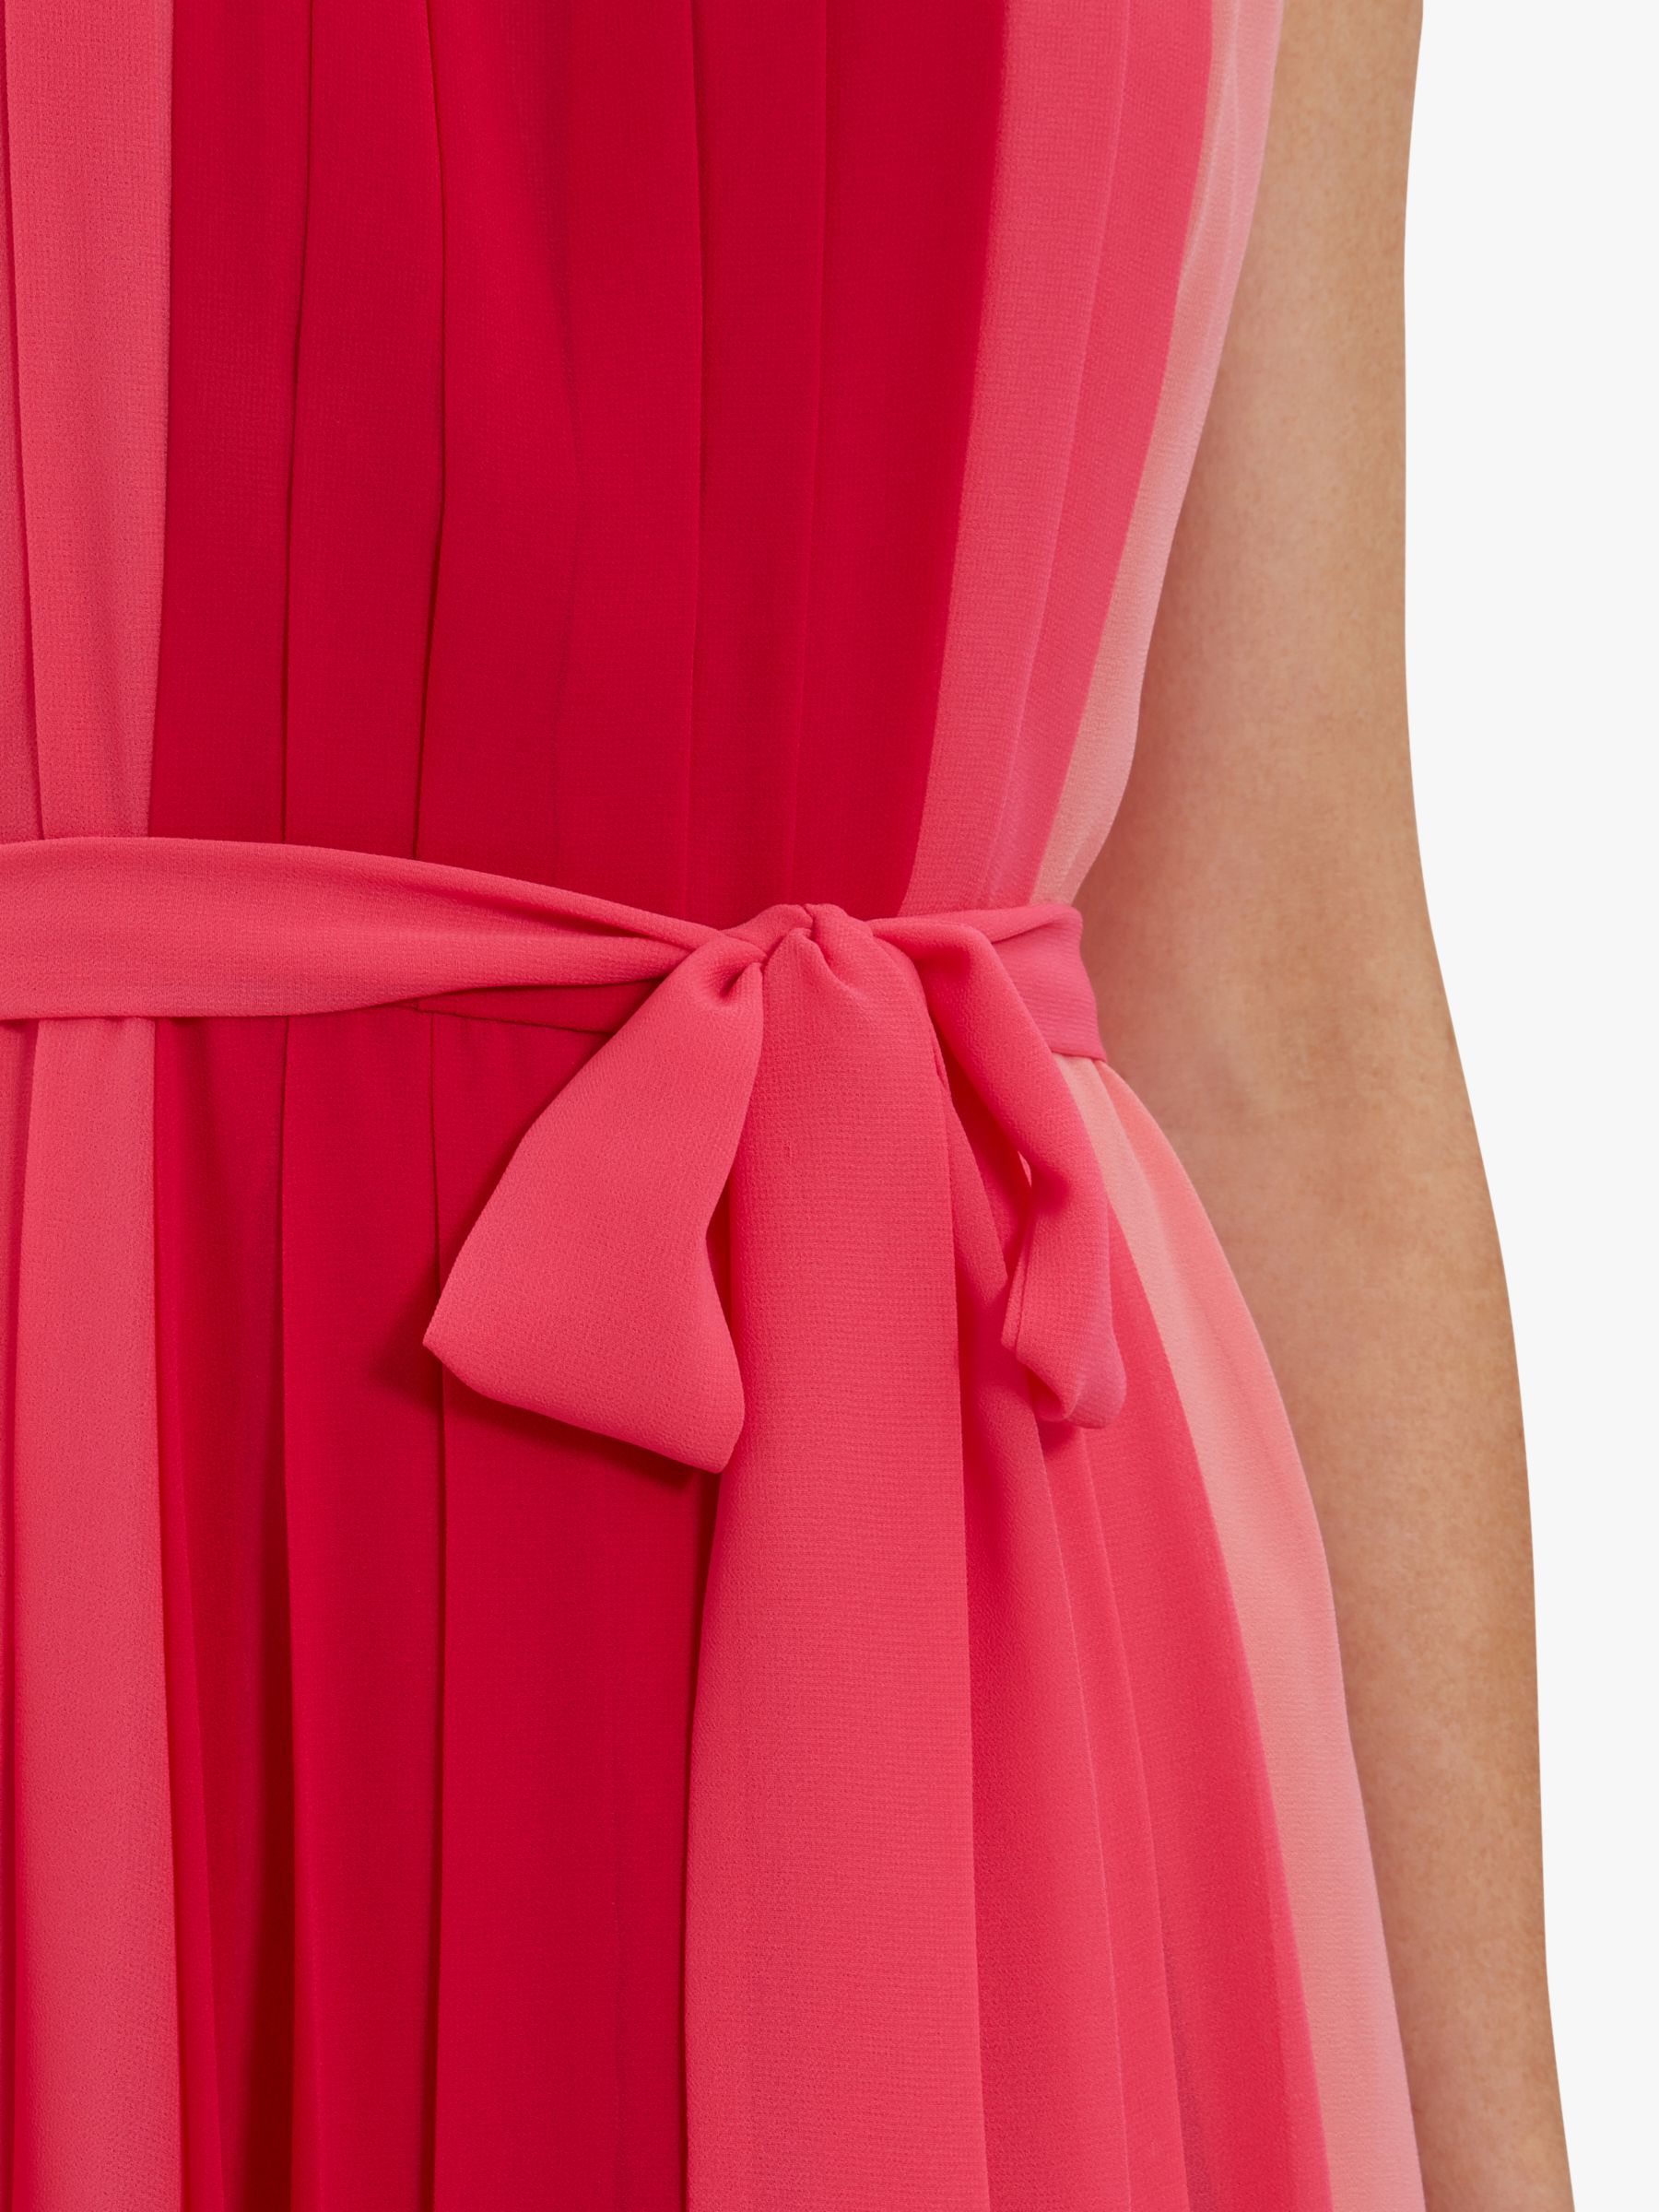 Gina Bacconi Janada Chiffon Maxi Dress, Hot Pink/Multi, 10